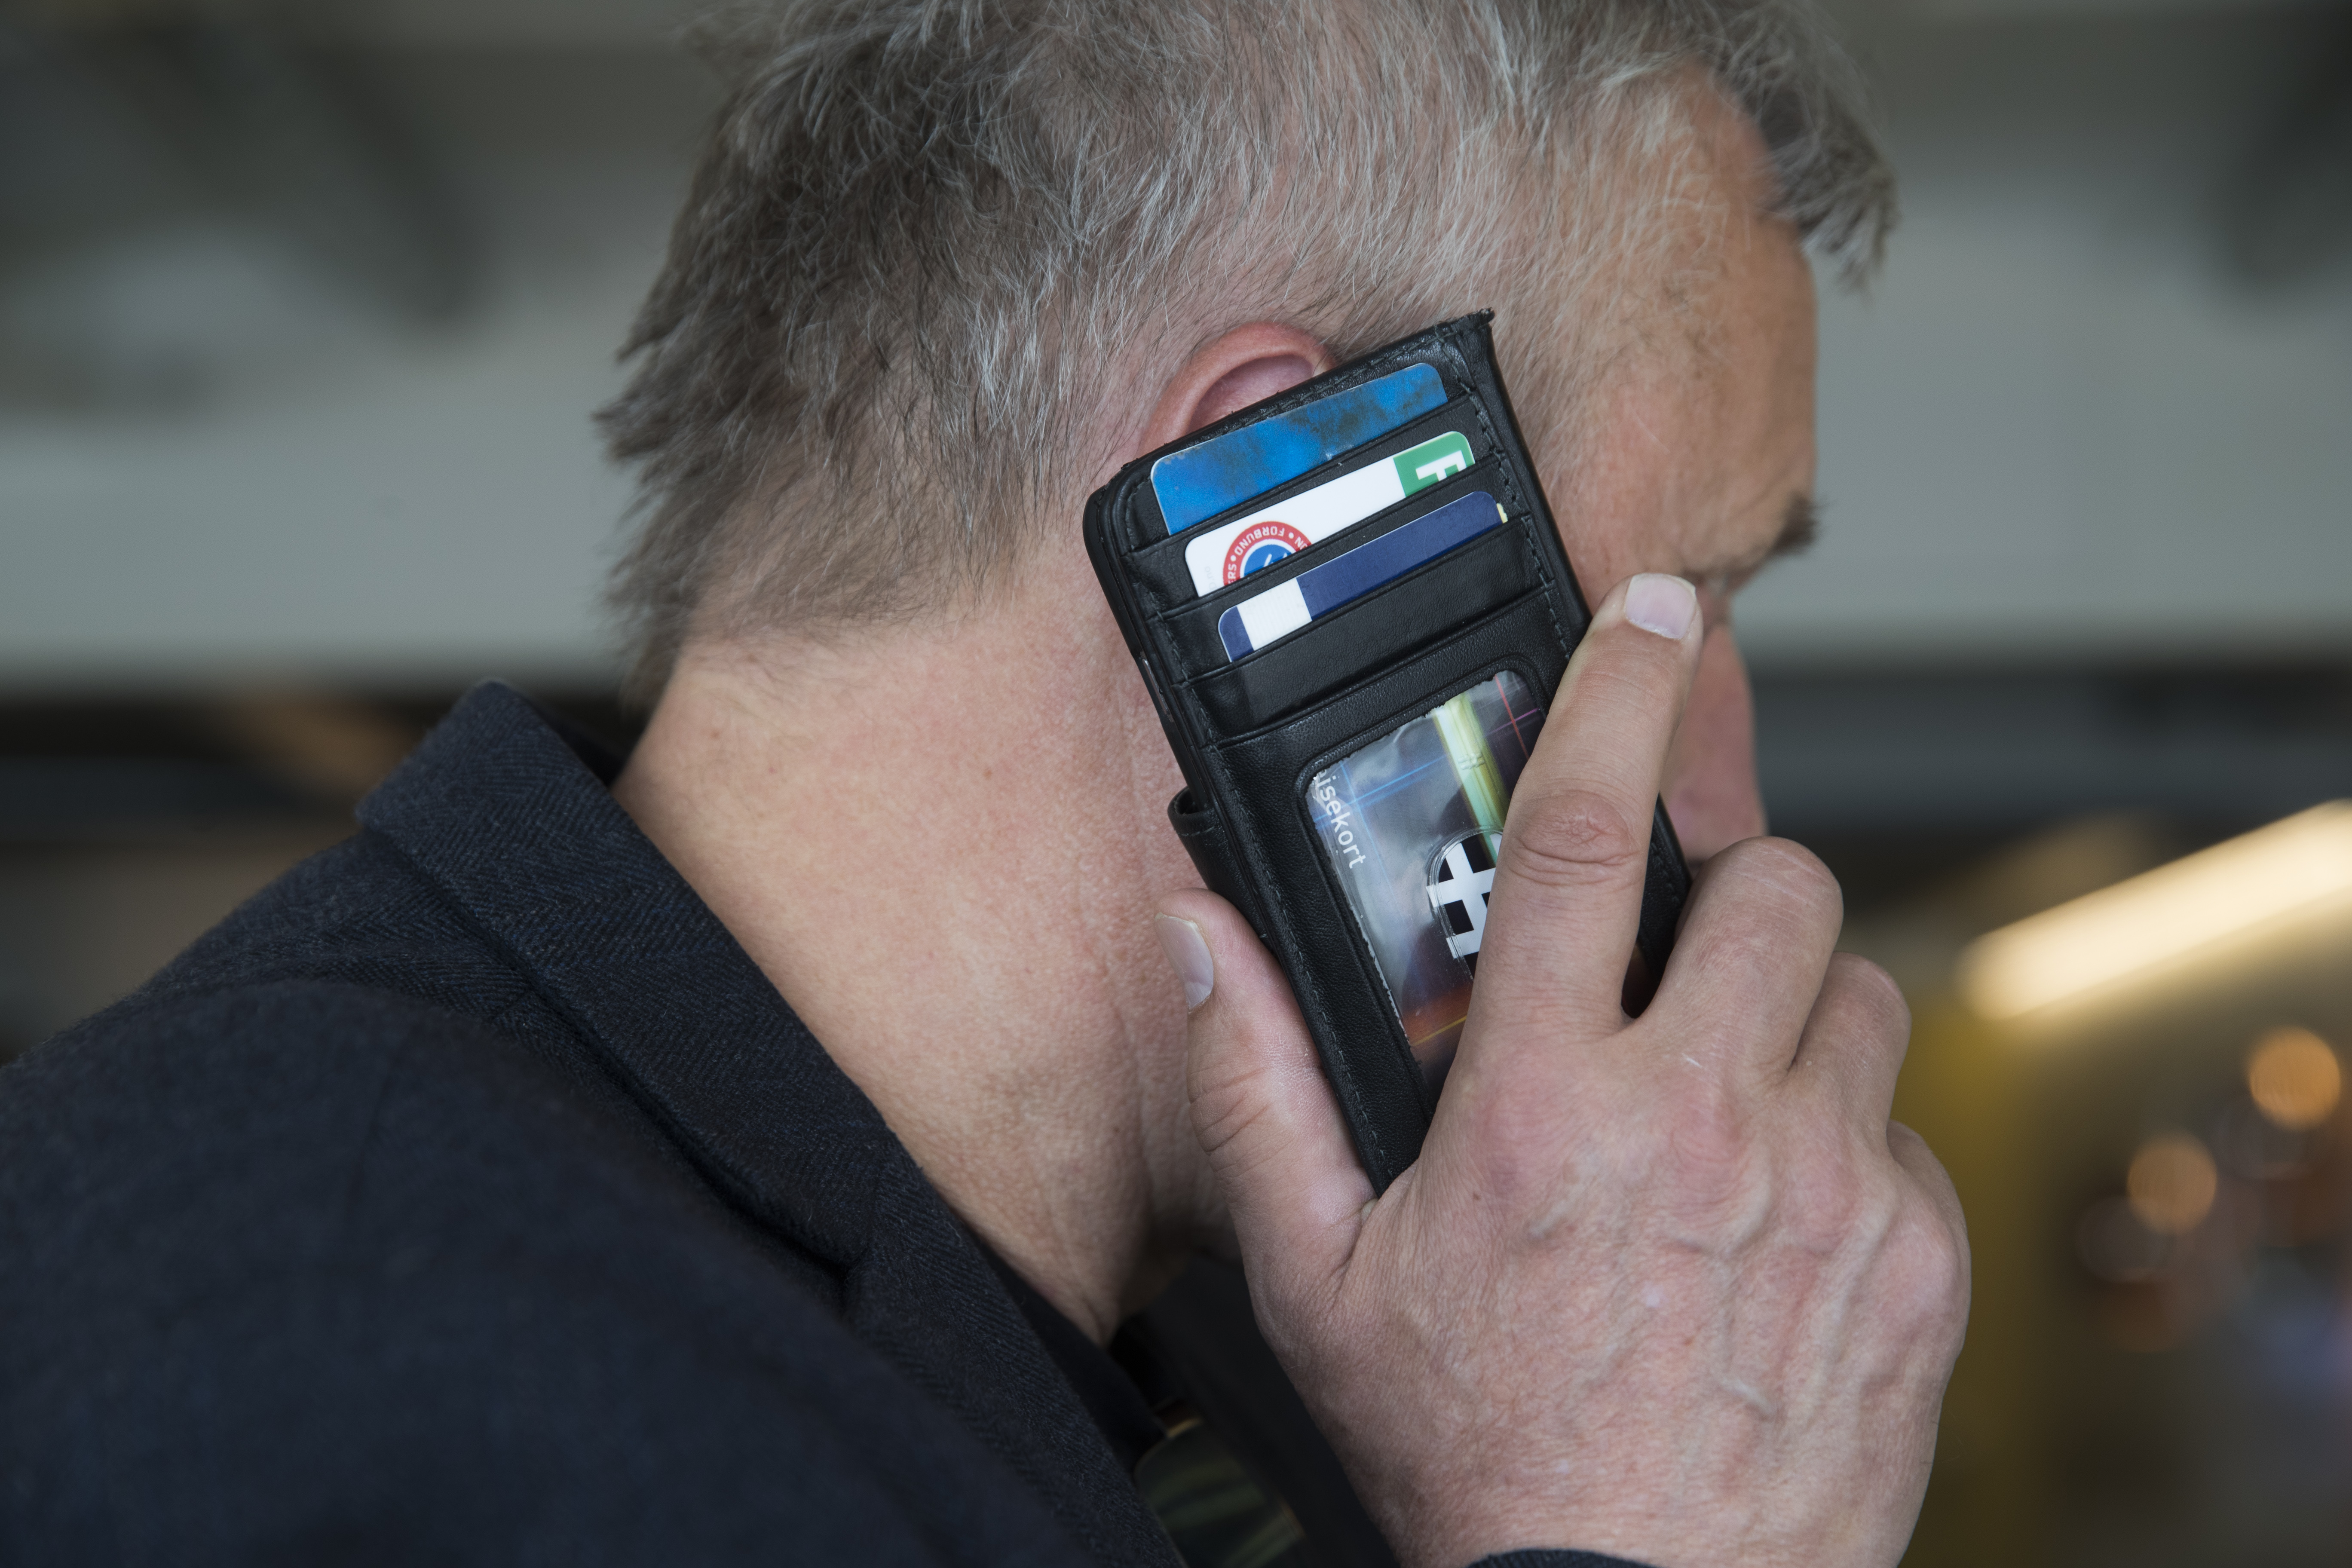 Just nu är det rekordmånga anmälningar mot telefonbedrägerier, som kallas för vishing. OBS: Bilden är en genrebild och har inget med bedrägerierna att göra. Foto: Berit Roald/NTB scanpix/TT